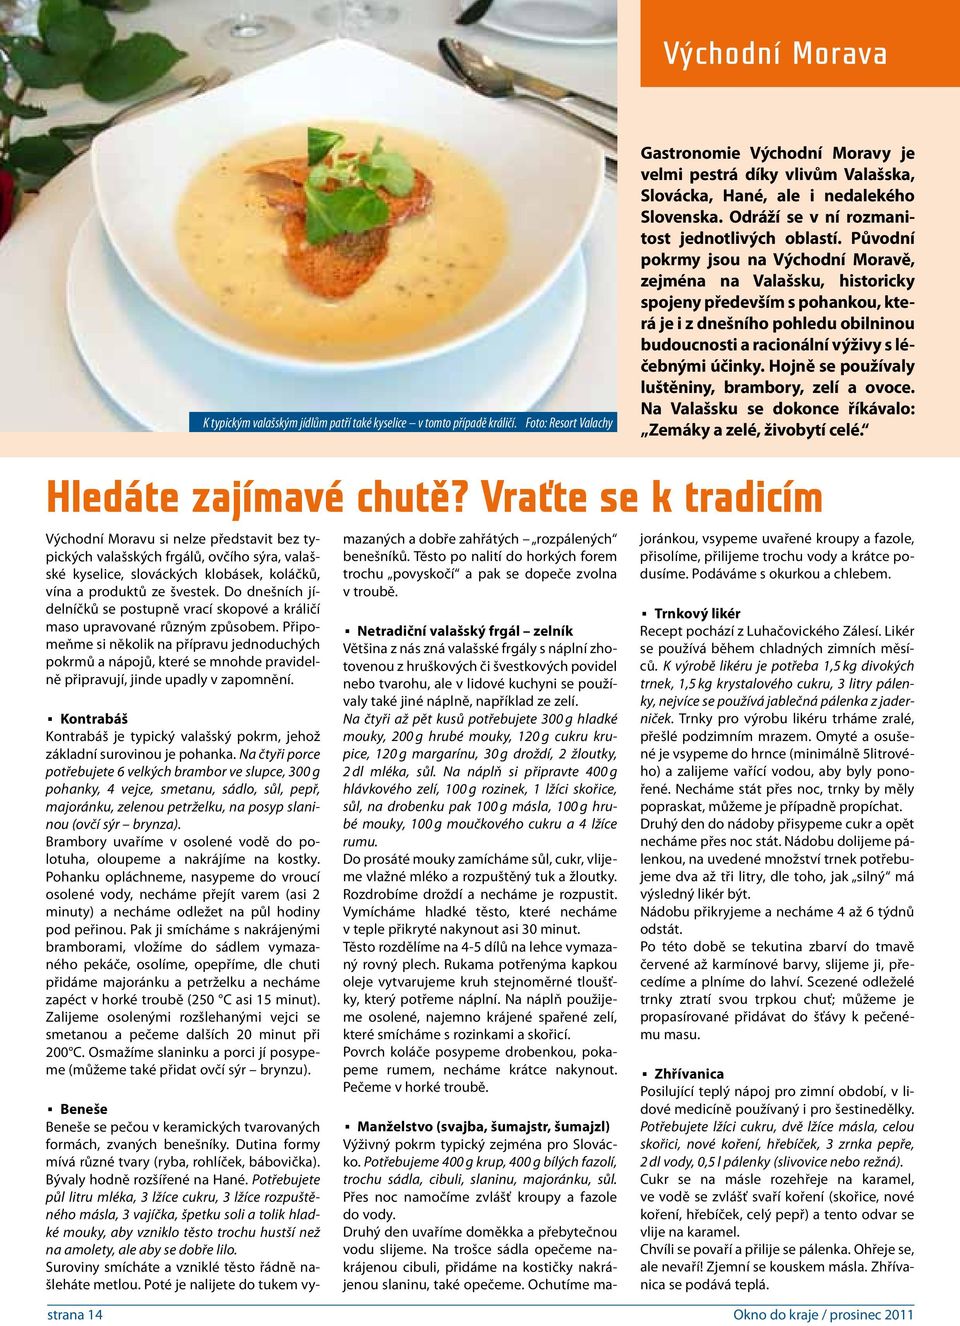 Původní pokrmy jsou na Východní Moravě, zejména na Valašsku, historicky spojeny především s pohankou, která je i z dnešního pohledu obilninou budoucnosti a racionální výživy s léčebnými účinky.